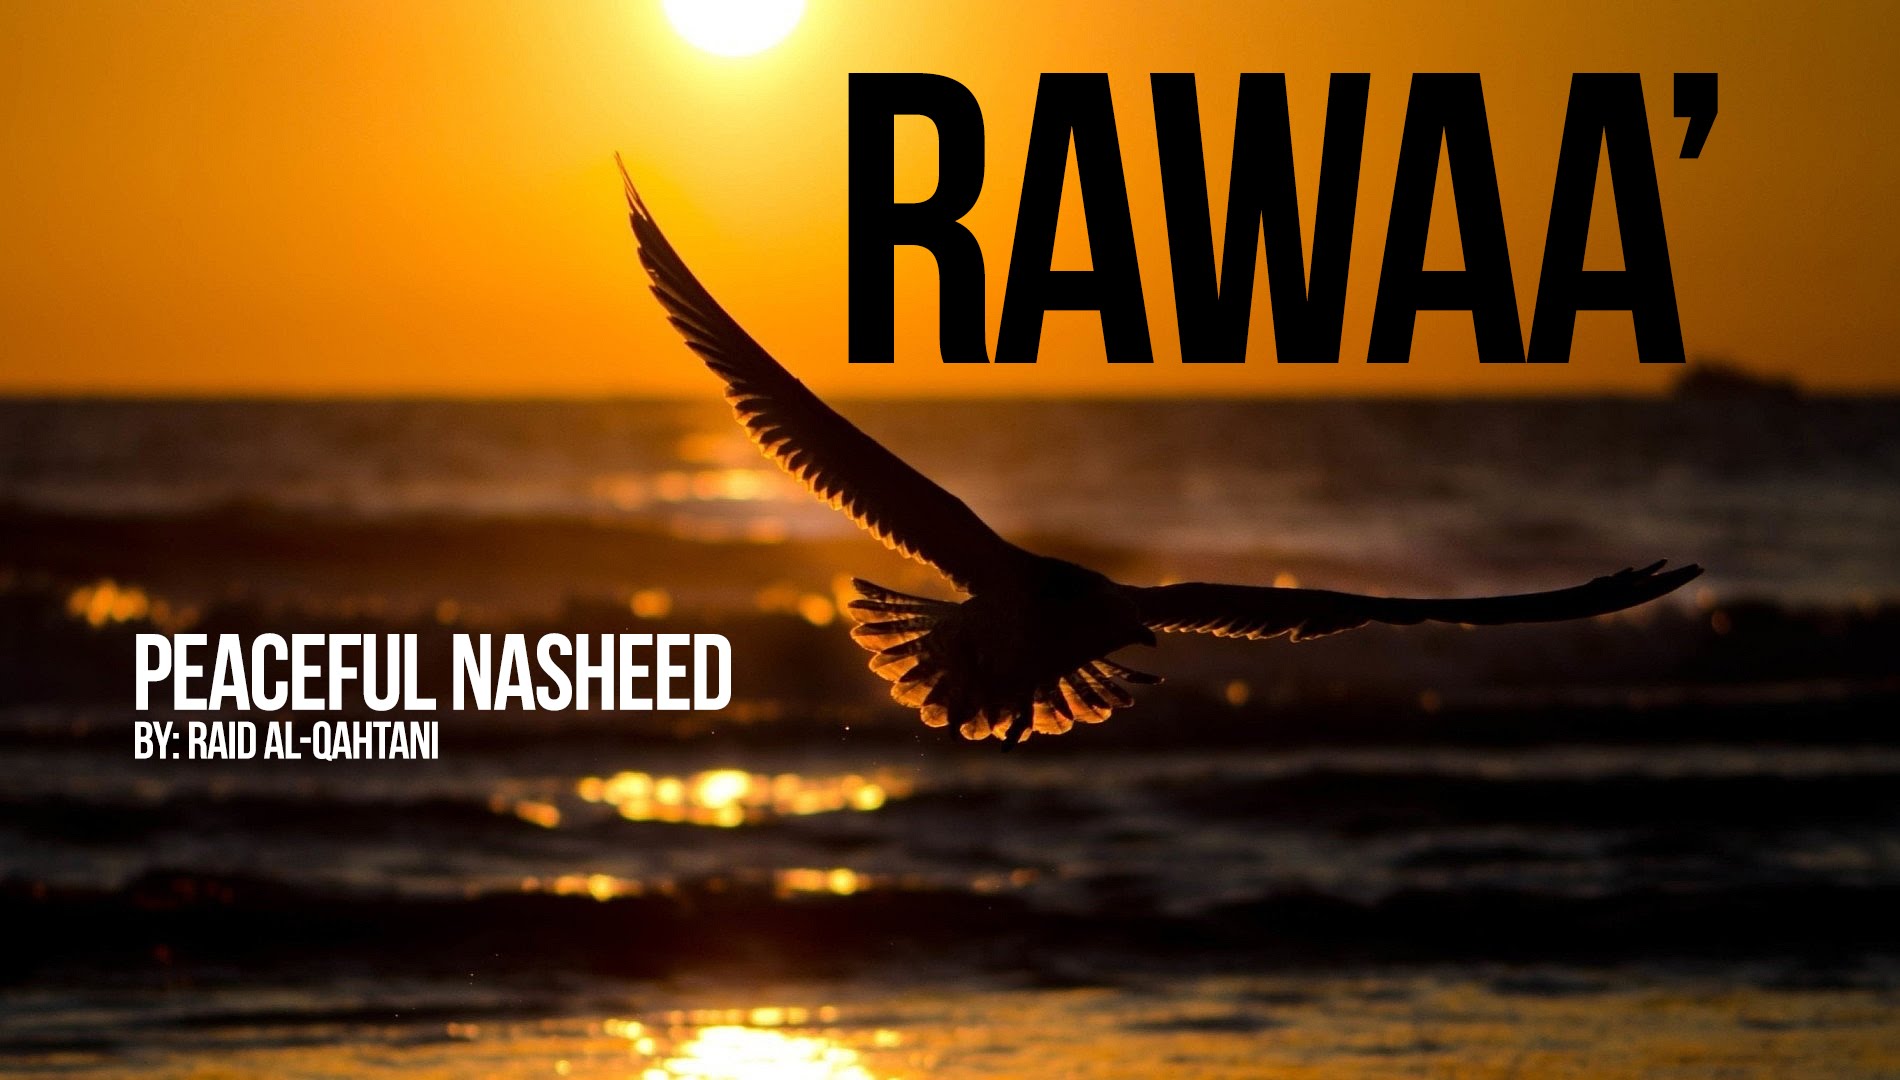 Rawaa' Beautiful Nasheed By Raid al-Qahtani